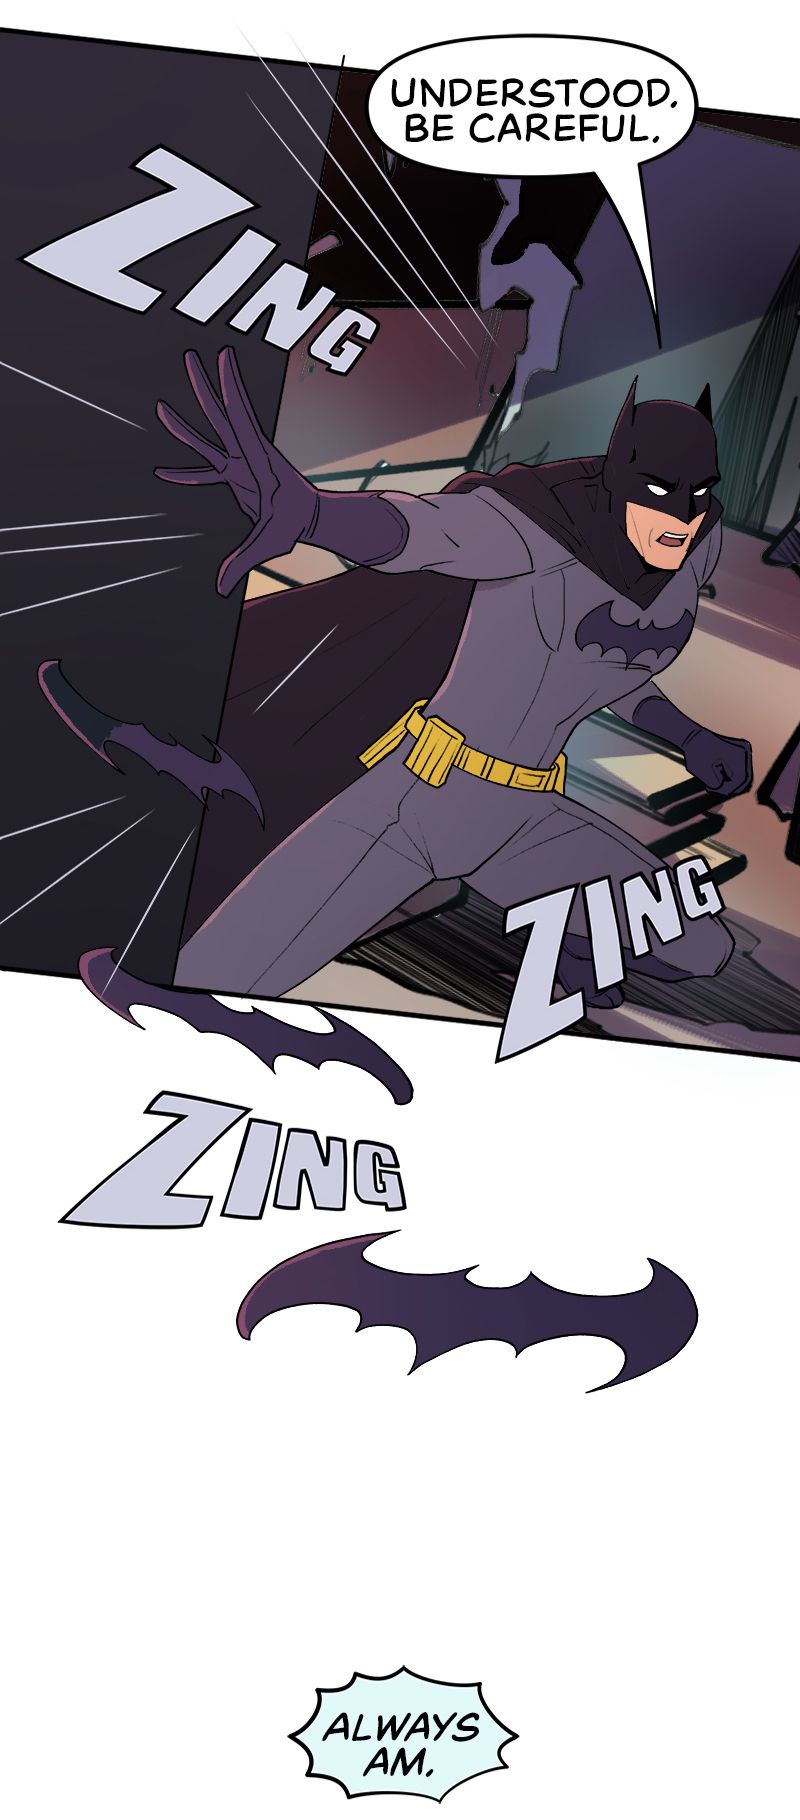 Batman dice a Robin di stare attento mentre lancia i batarang.  